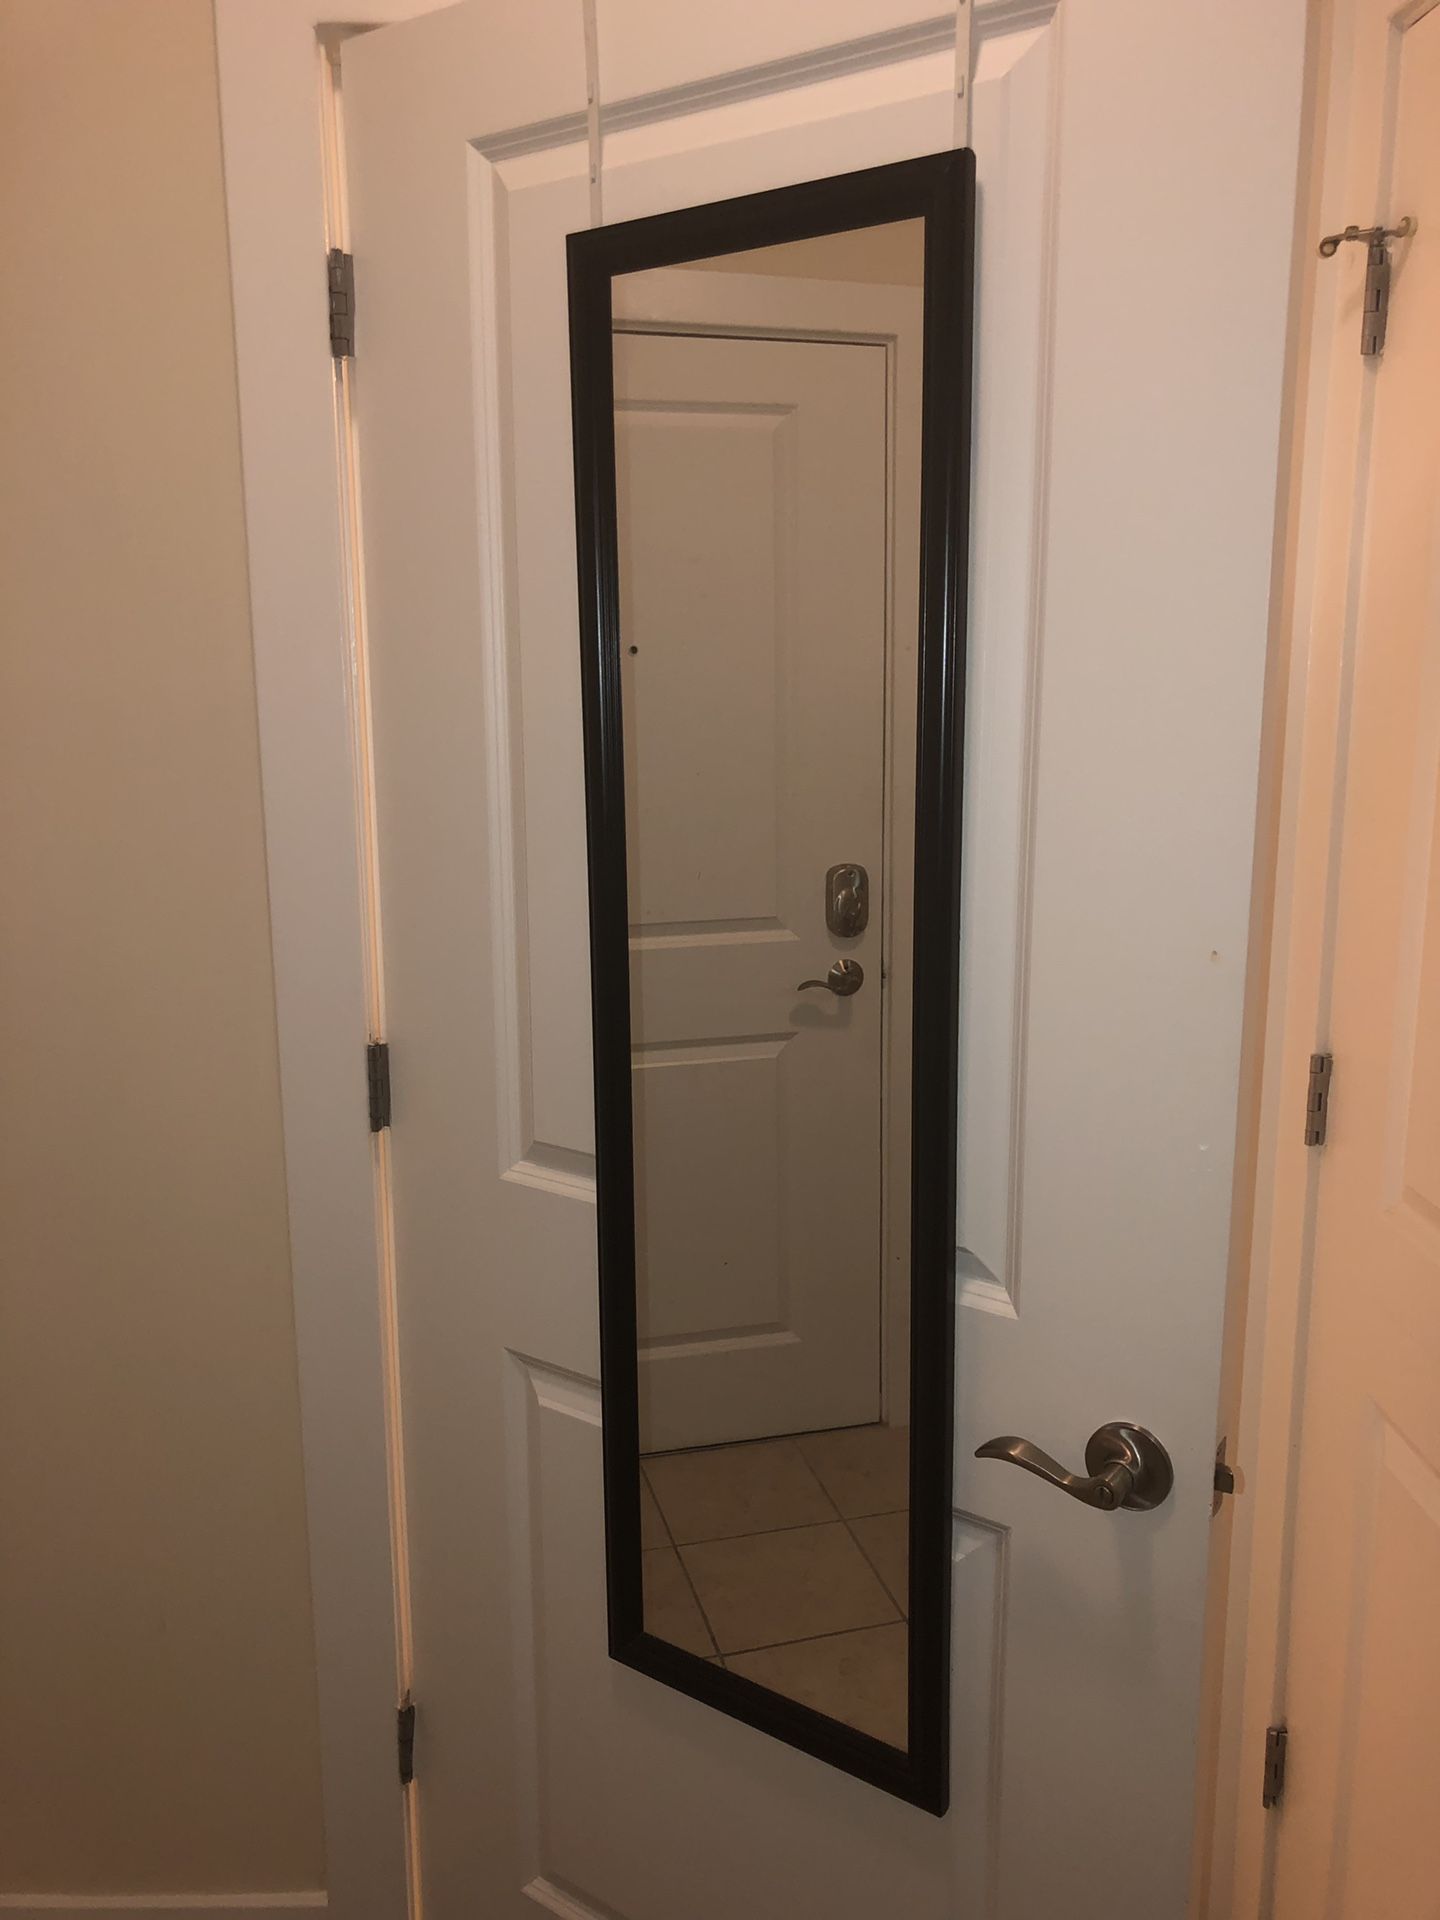 Hangable door mirror